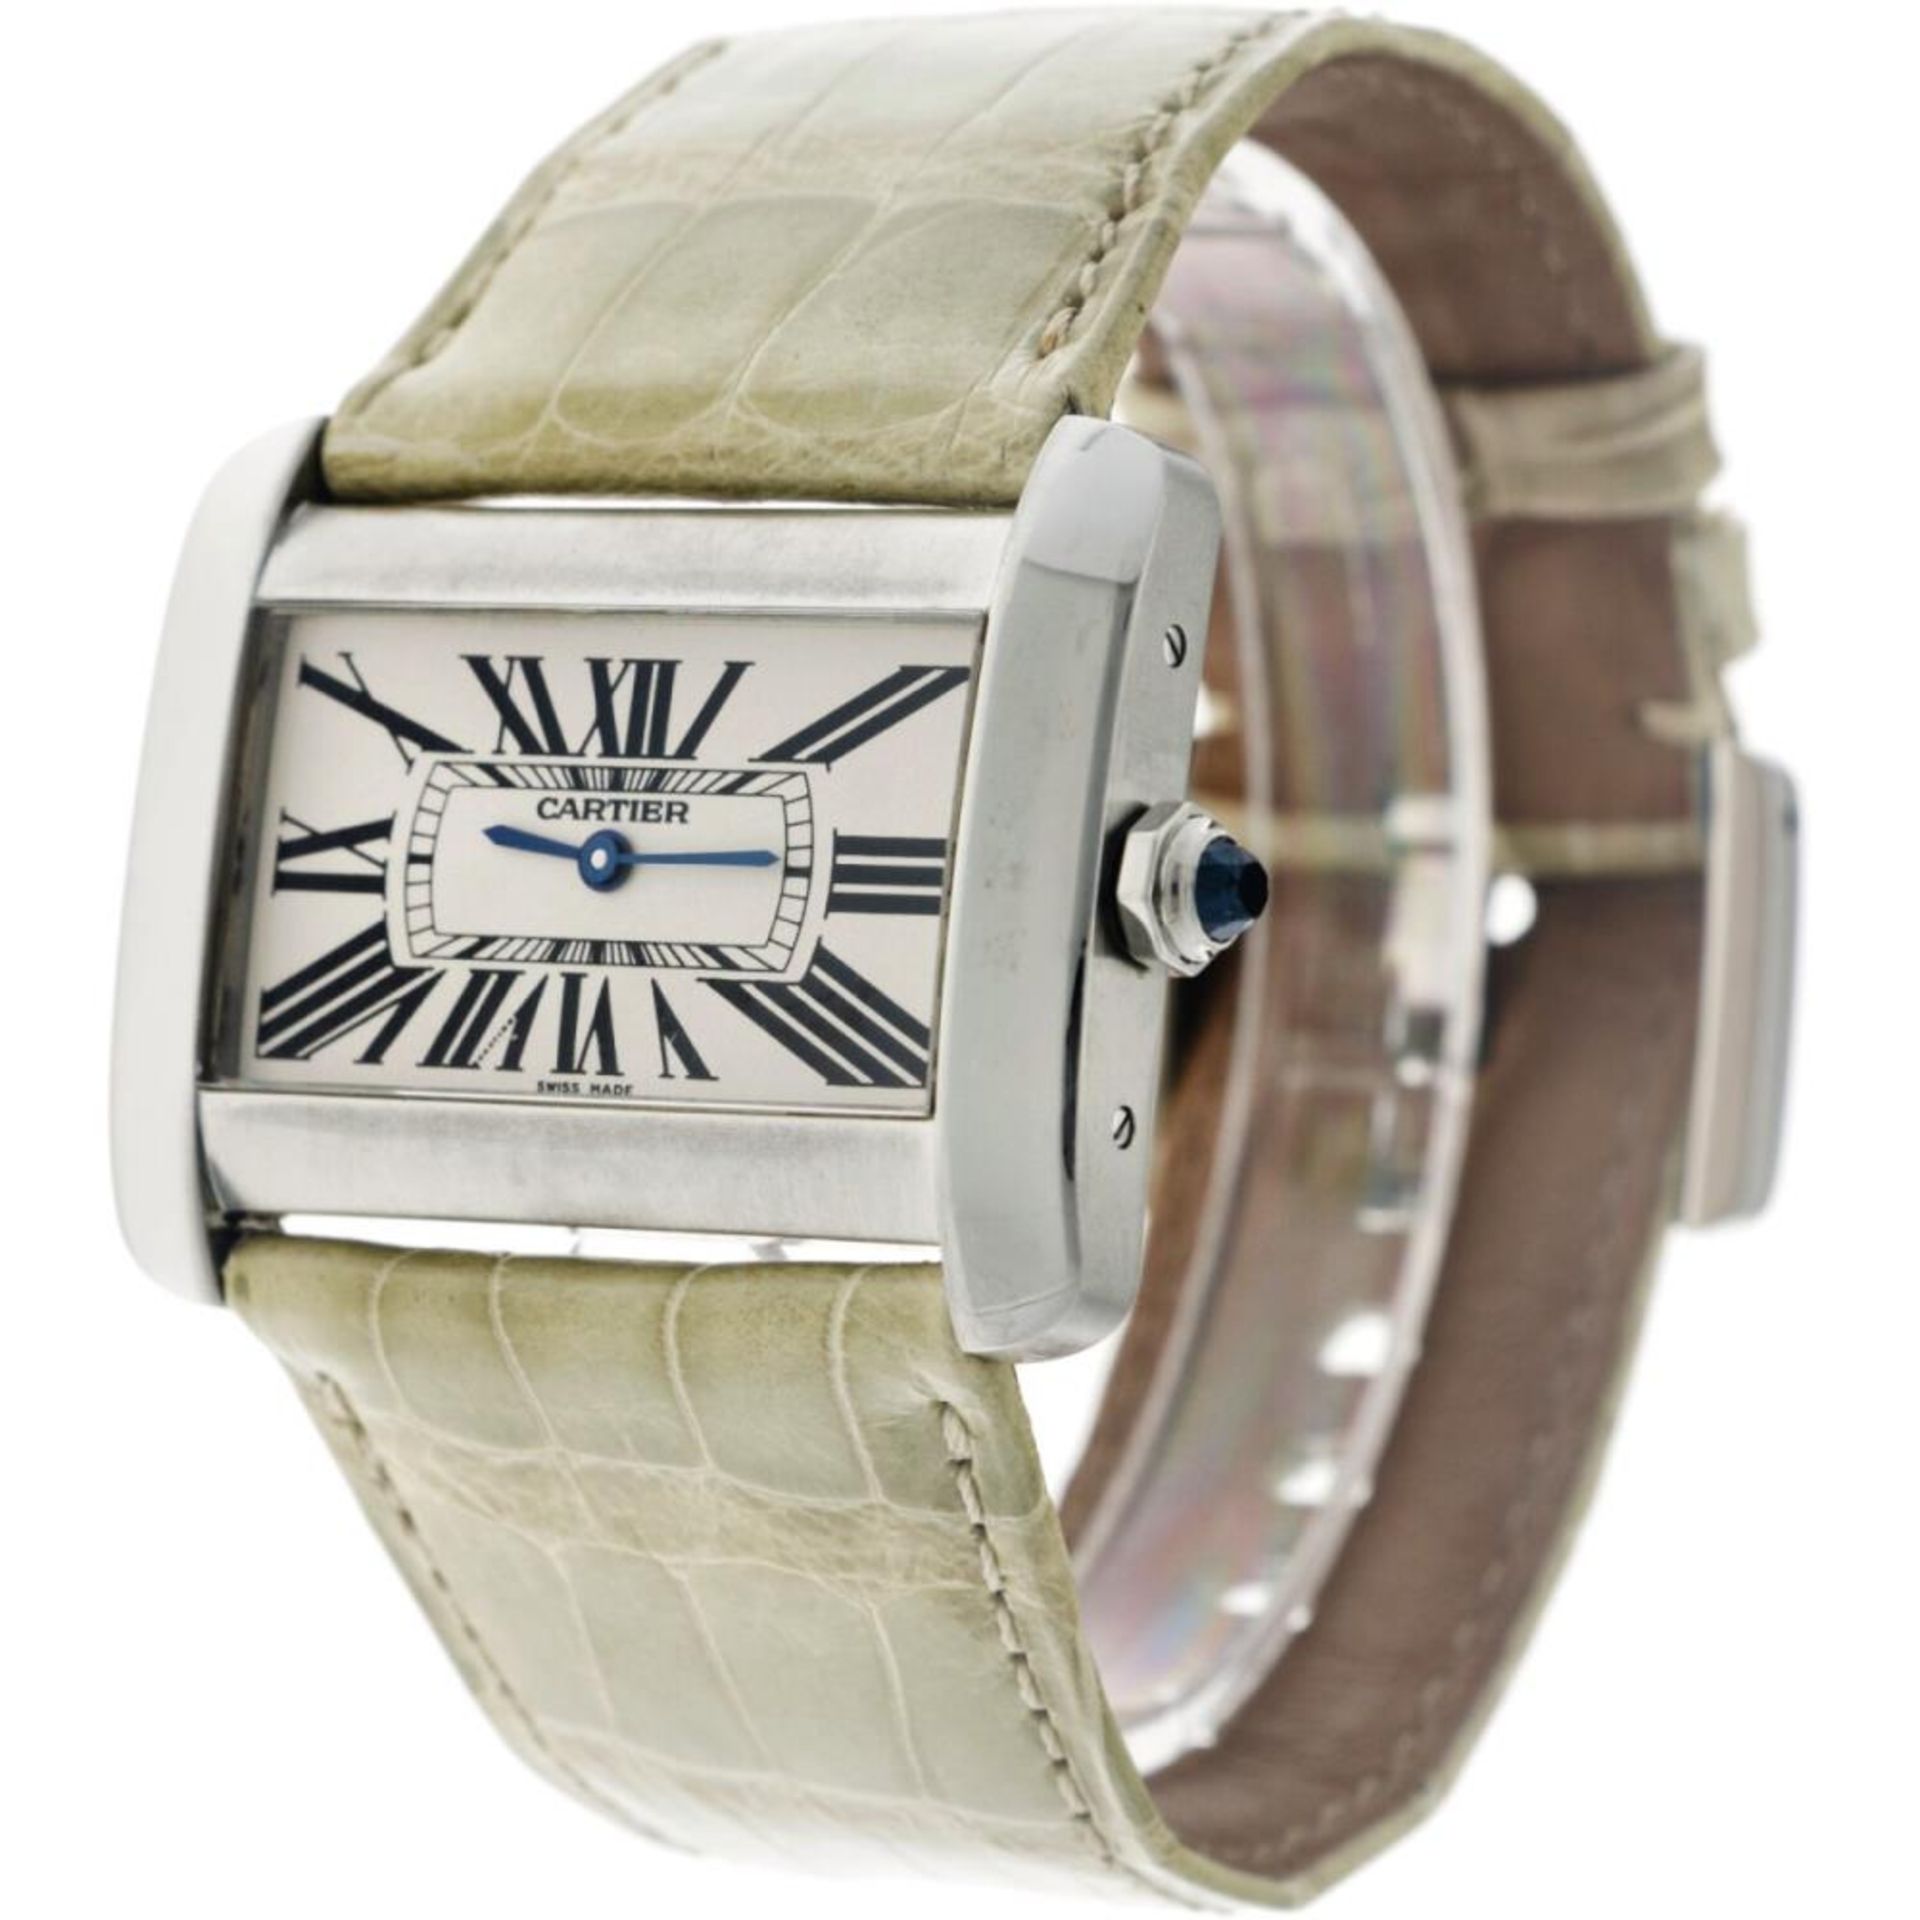 Cartier Tank Divan 2600 - Ladies watch - approx. 2012. - Image 2 of 6